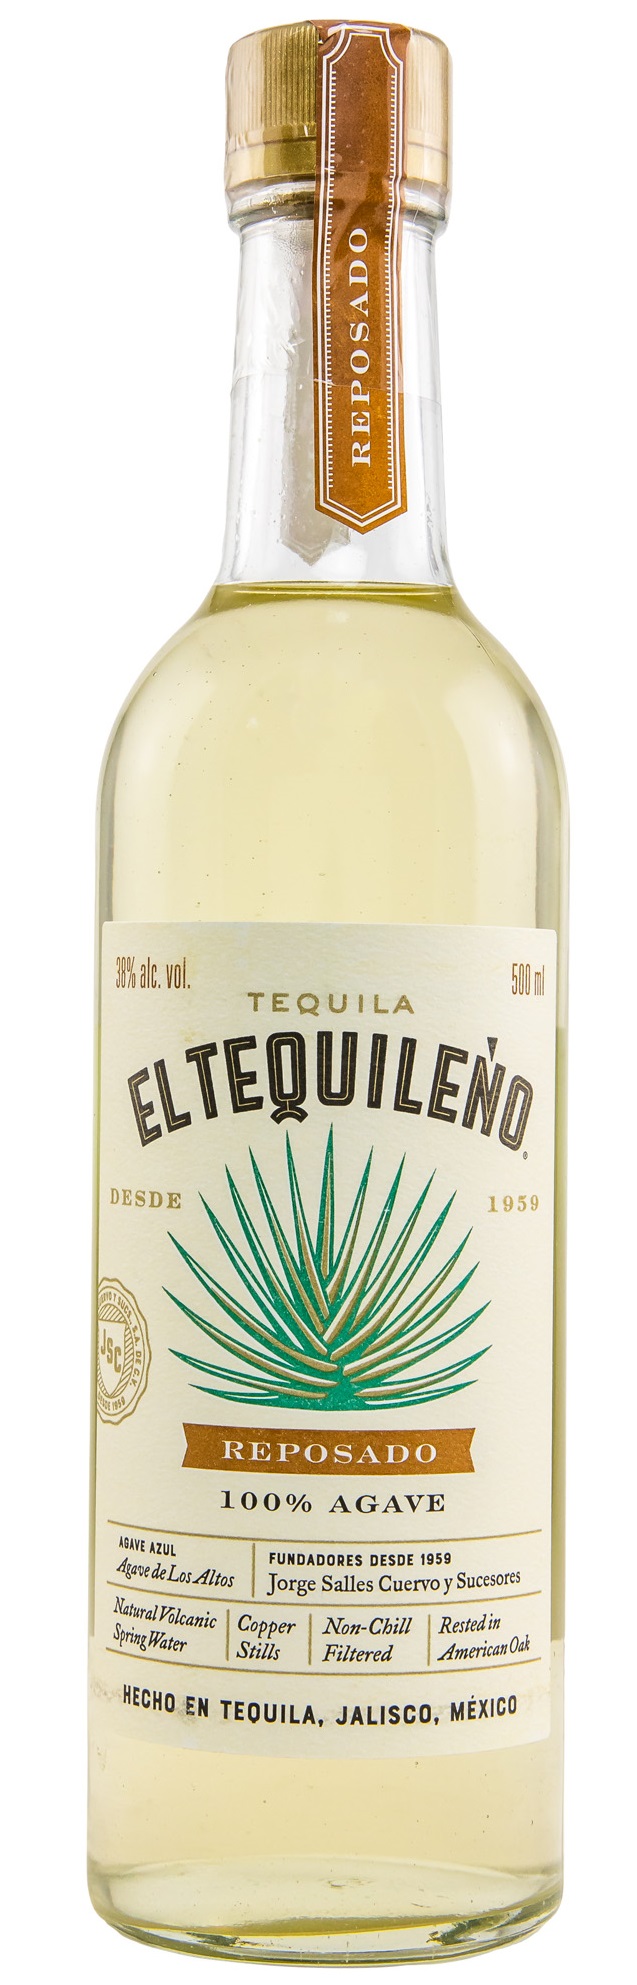 El Tequileno Tequila Reposado 38.0% 0,5l